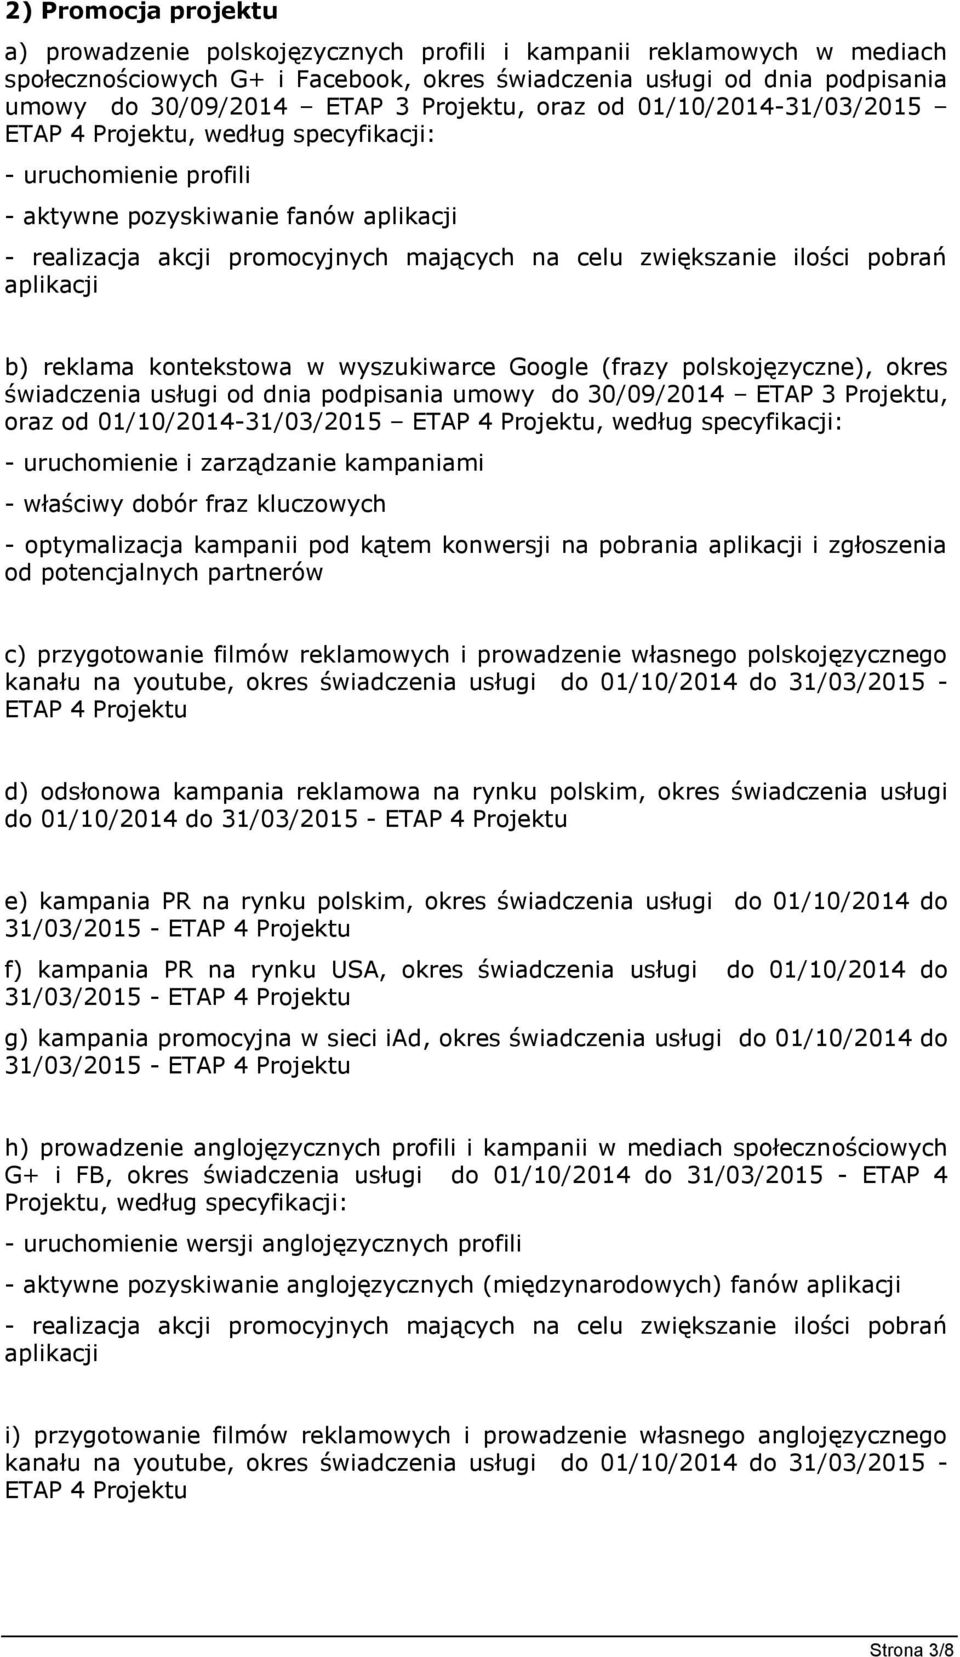 zwiększanie ilości pobrań aplikacji b) reklama kontekstowa w wyszukiwarce Google (frazy polskojęzyczne), okres świadczenia usługi od dnia podpisania umowy do 30/09/2014 ETAP 3 Projektu, oraz od